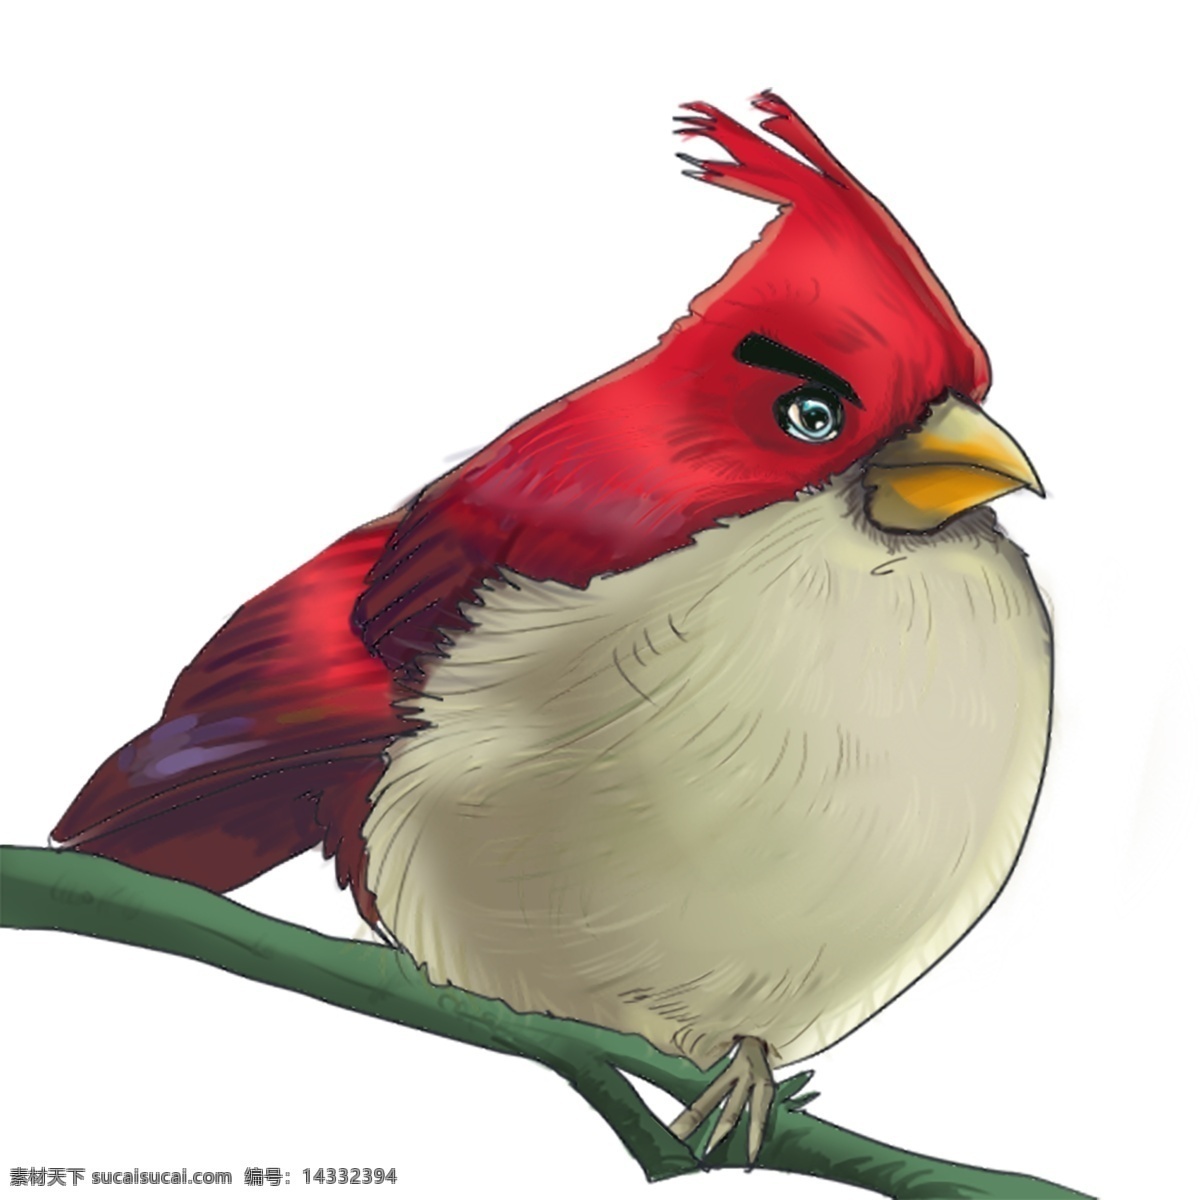 卡通 动物 漫画 红色 鹦鹉 插画 卡通动物漫画 动物插画 卡通动物 生物世界 红色鹦鹉 树枝 树叶